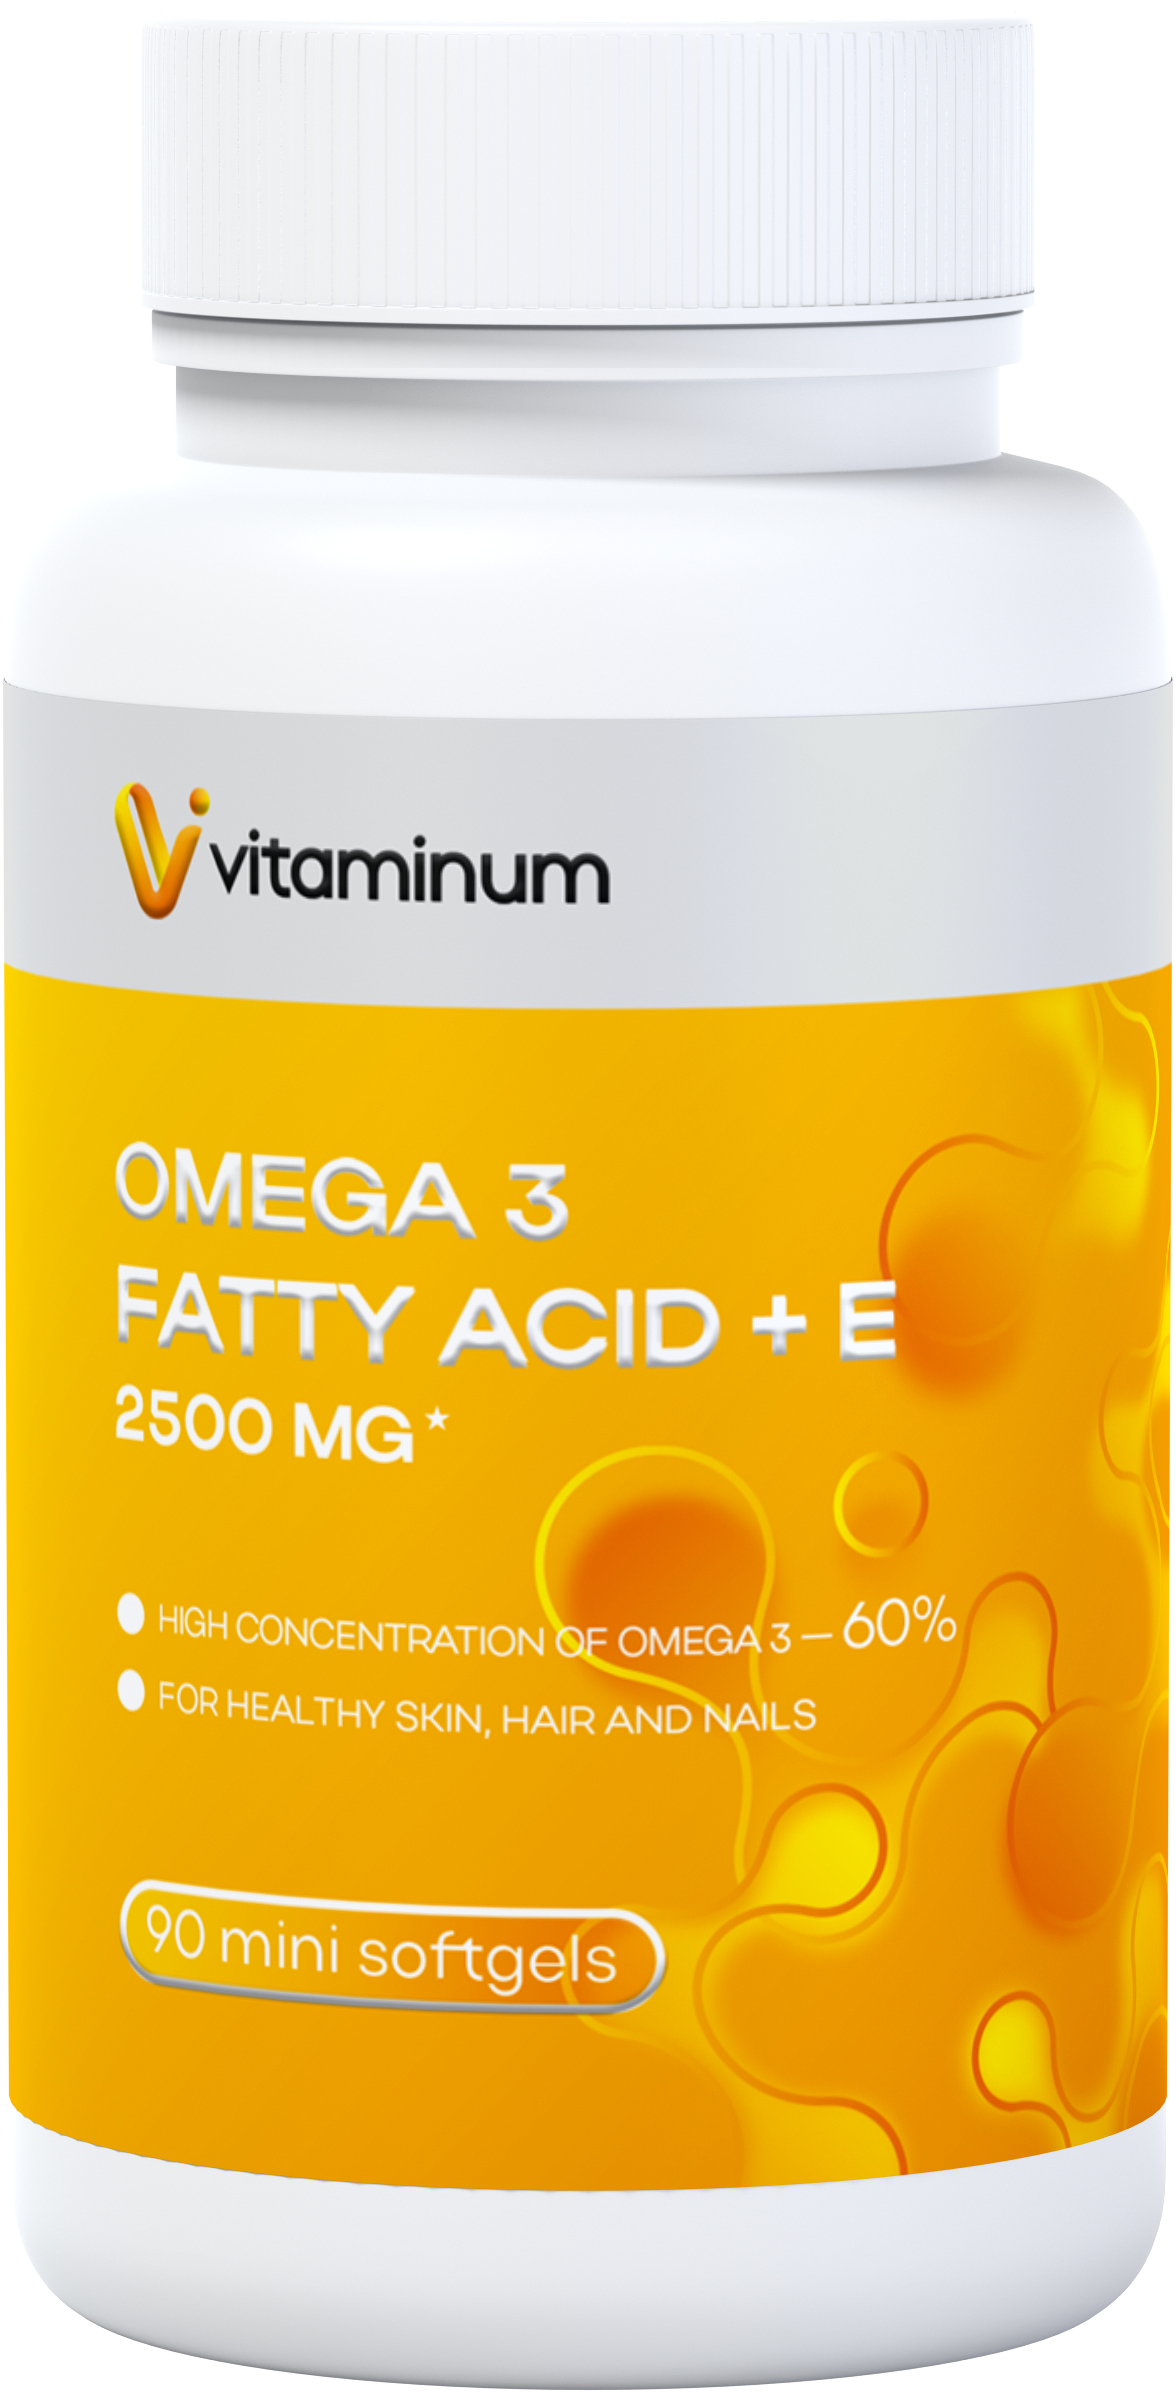  Vitaminum ОМЕГА 3 60% + витамин Е (2500 MG*) 90 капсул 700 мг   в Новом Уренгое